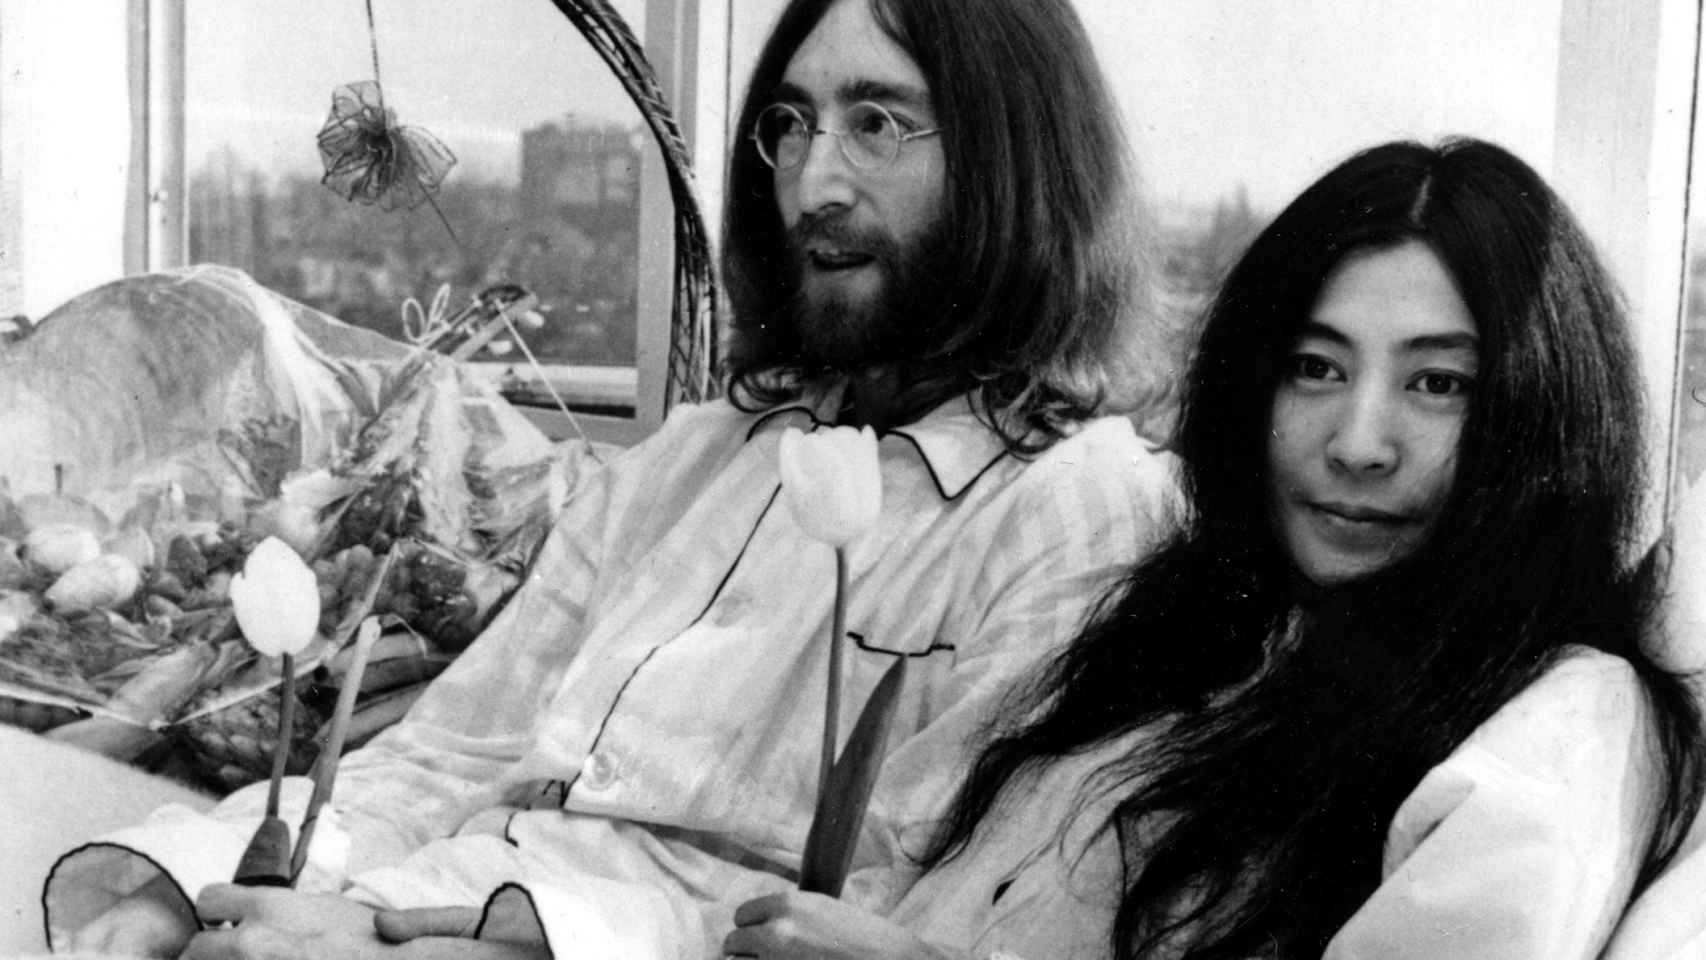 Yoko y John Lennon en su conocida performance por la paz.